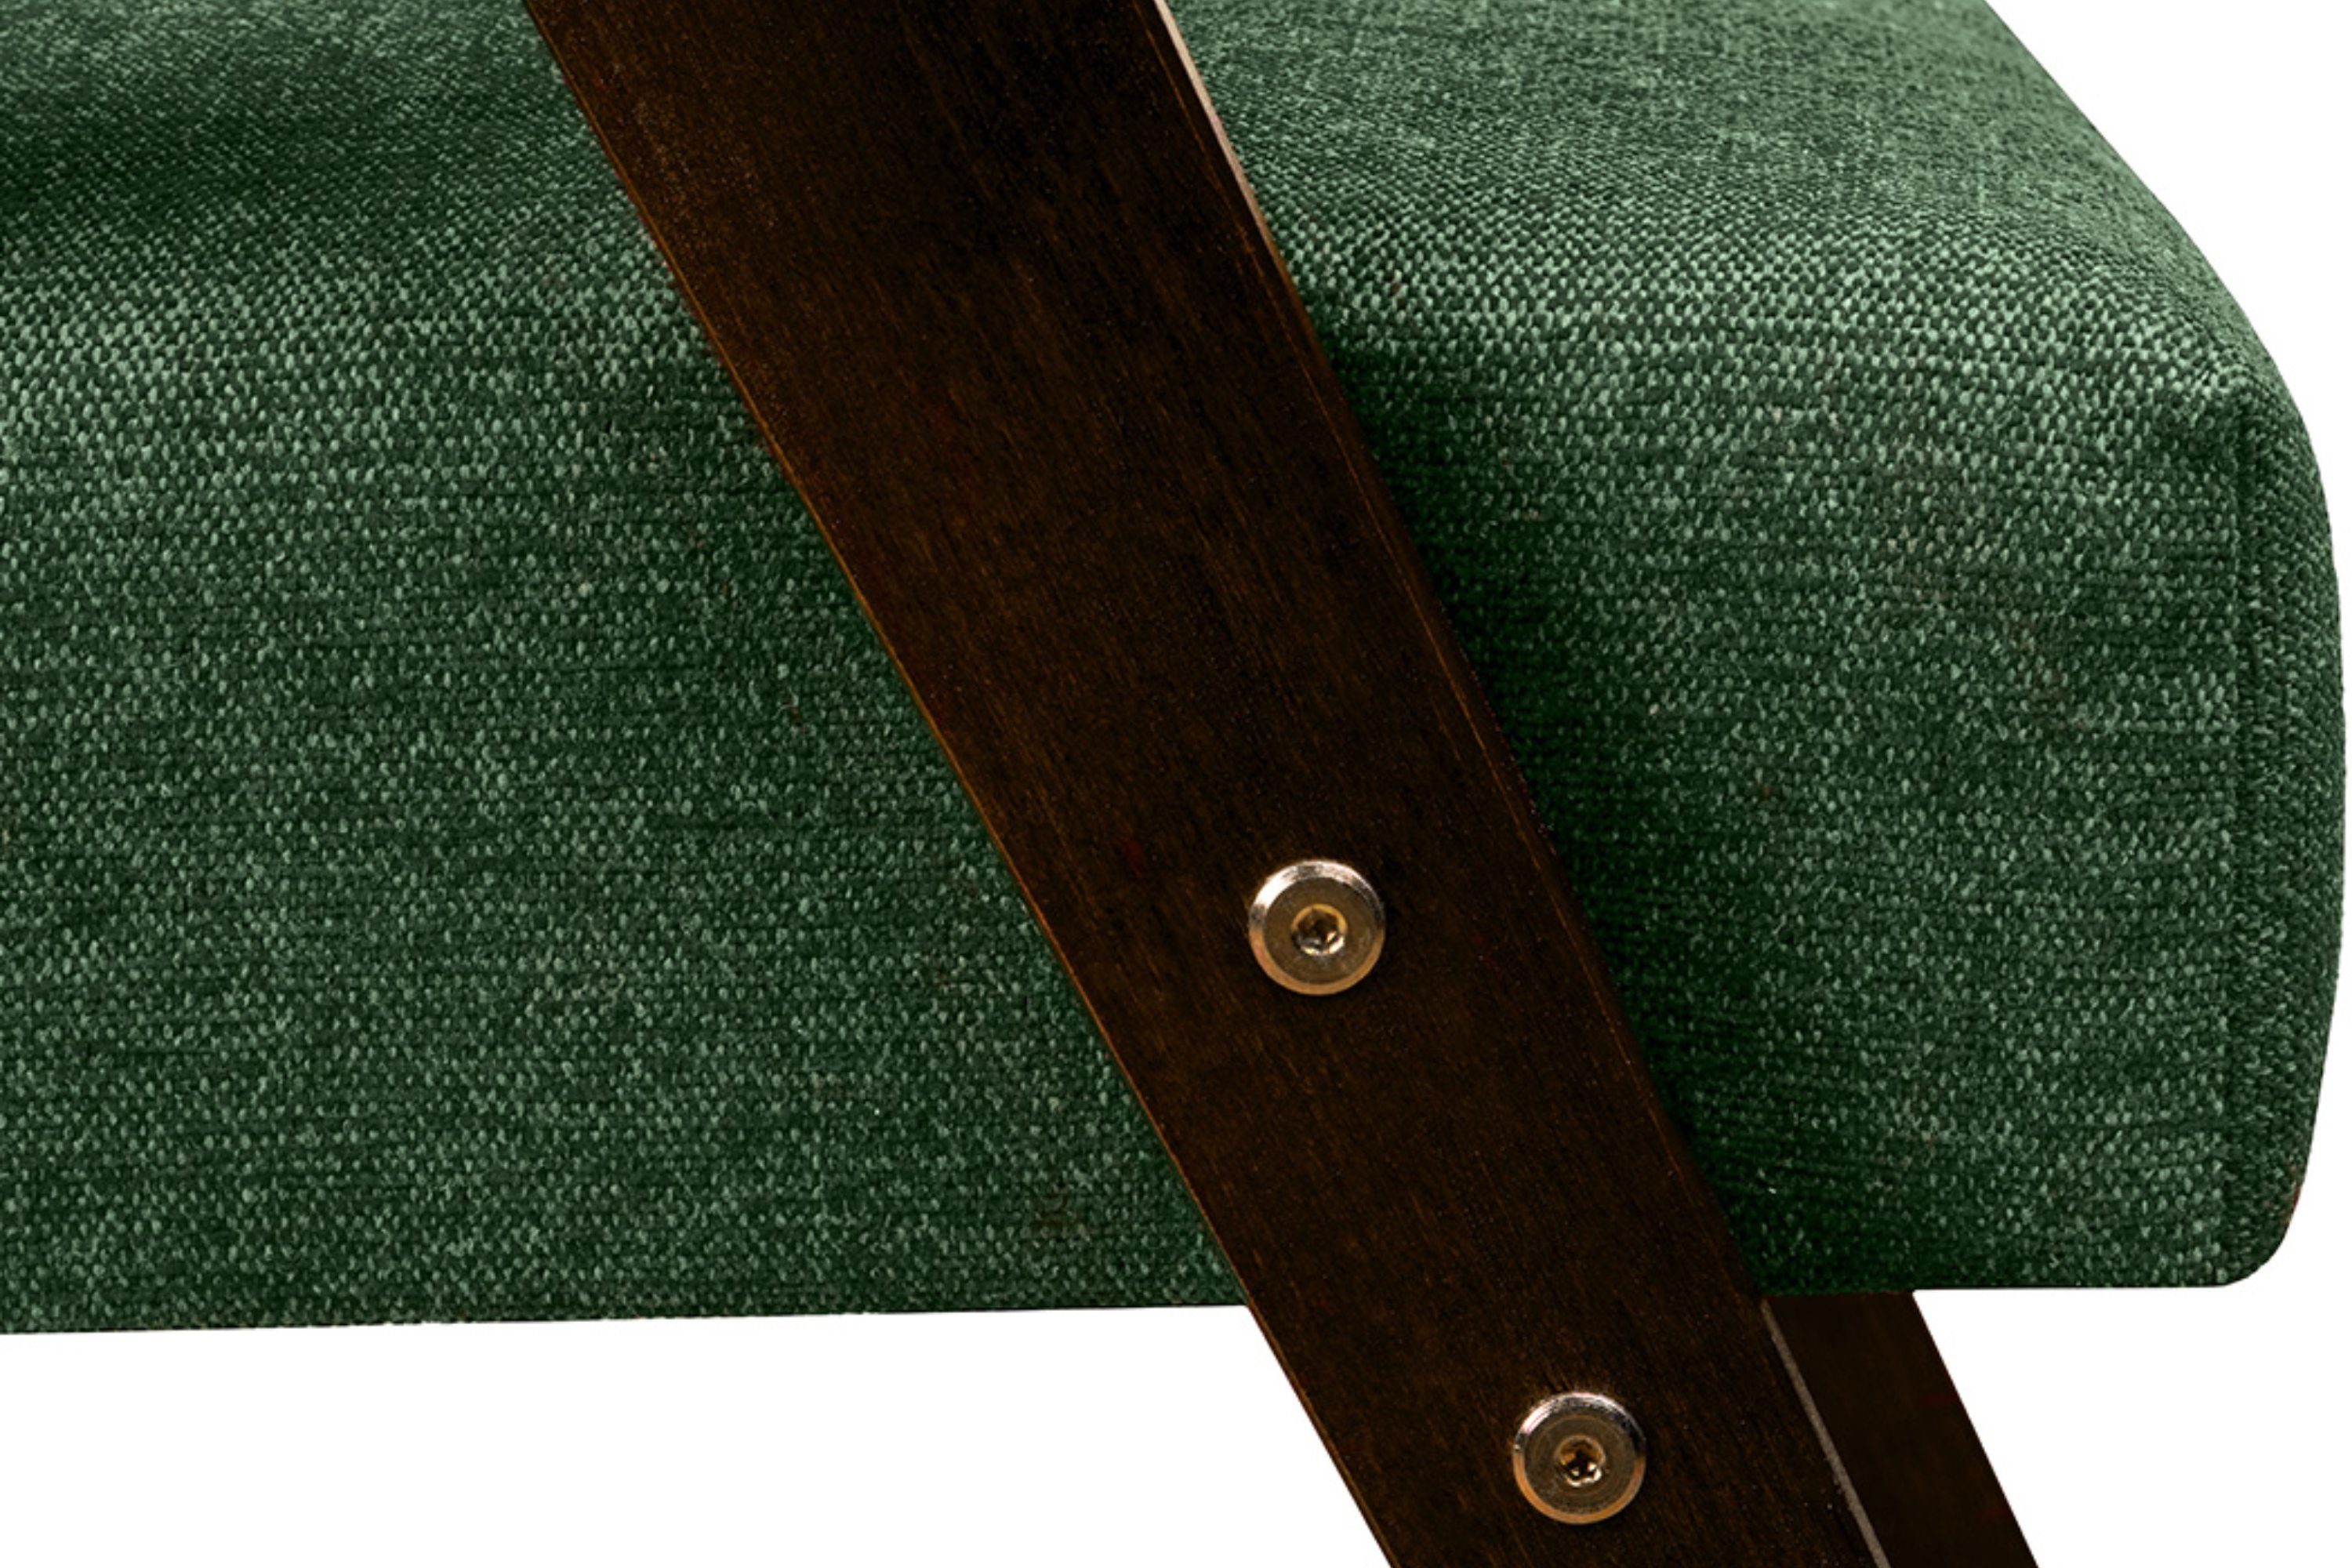 Konsimo lackiertem profilierte Sessel, aus Cocktailsessel NASET Rahmen Rückenlehne Holz,